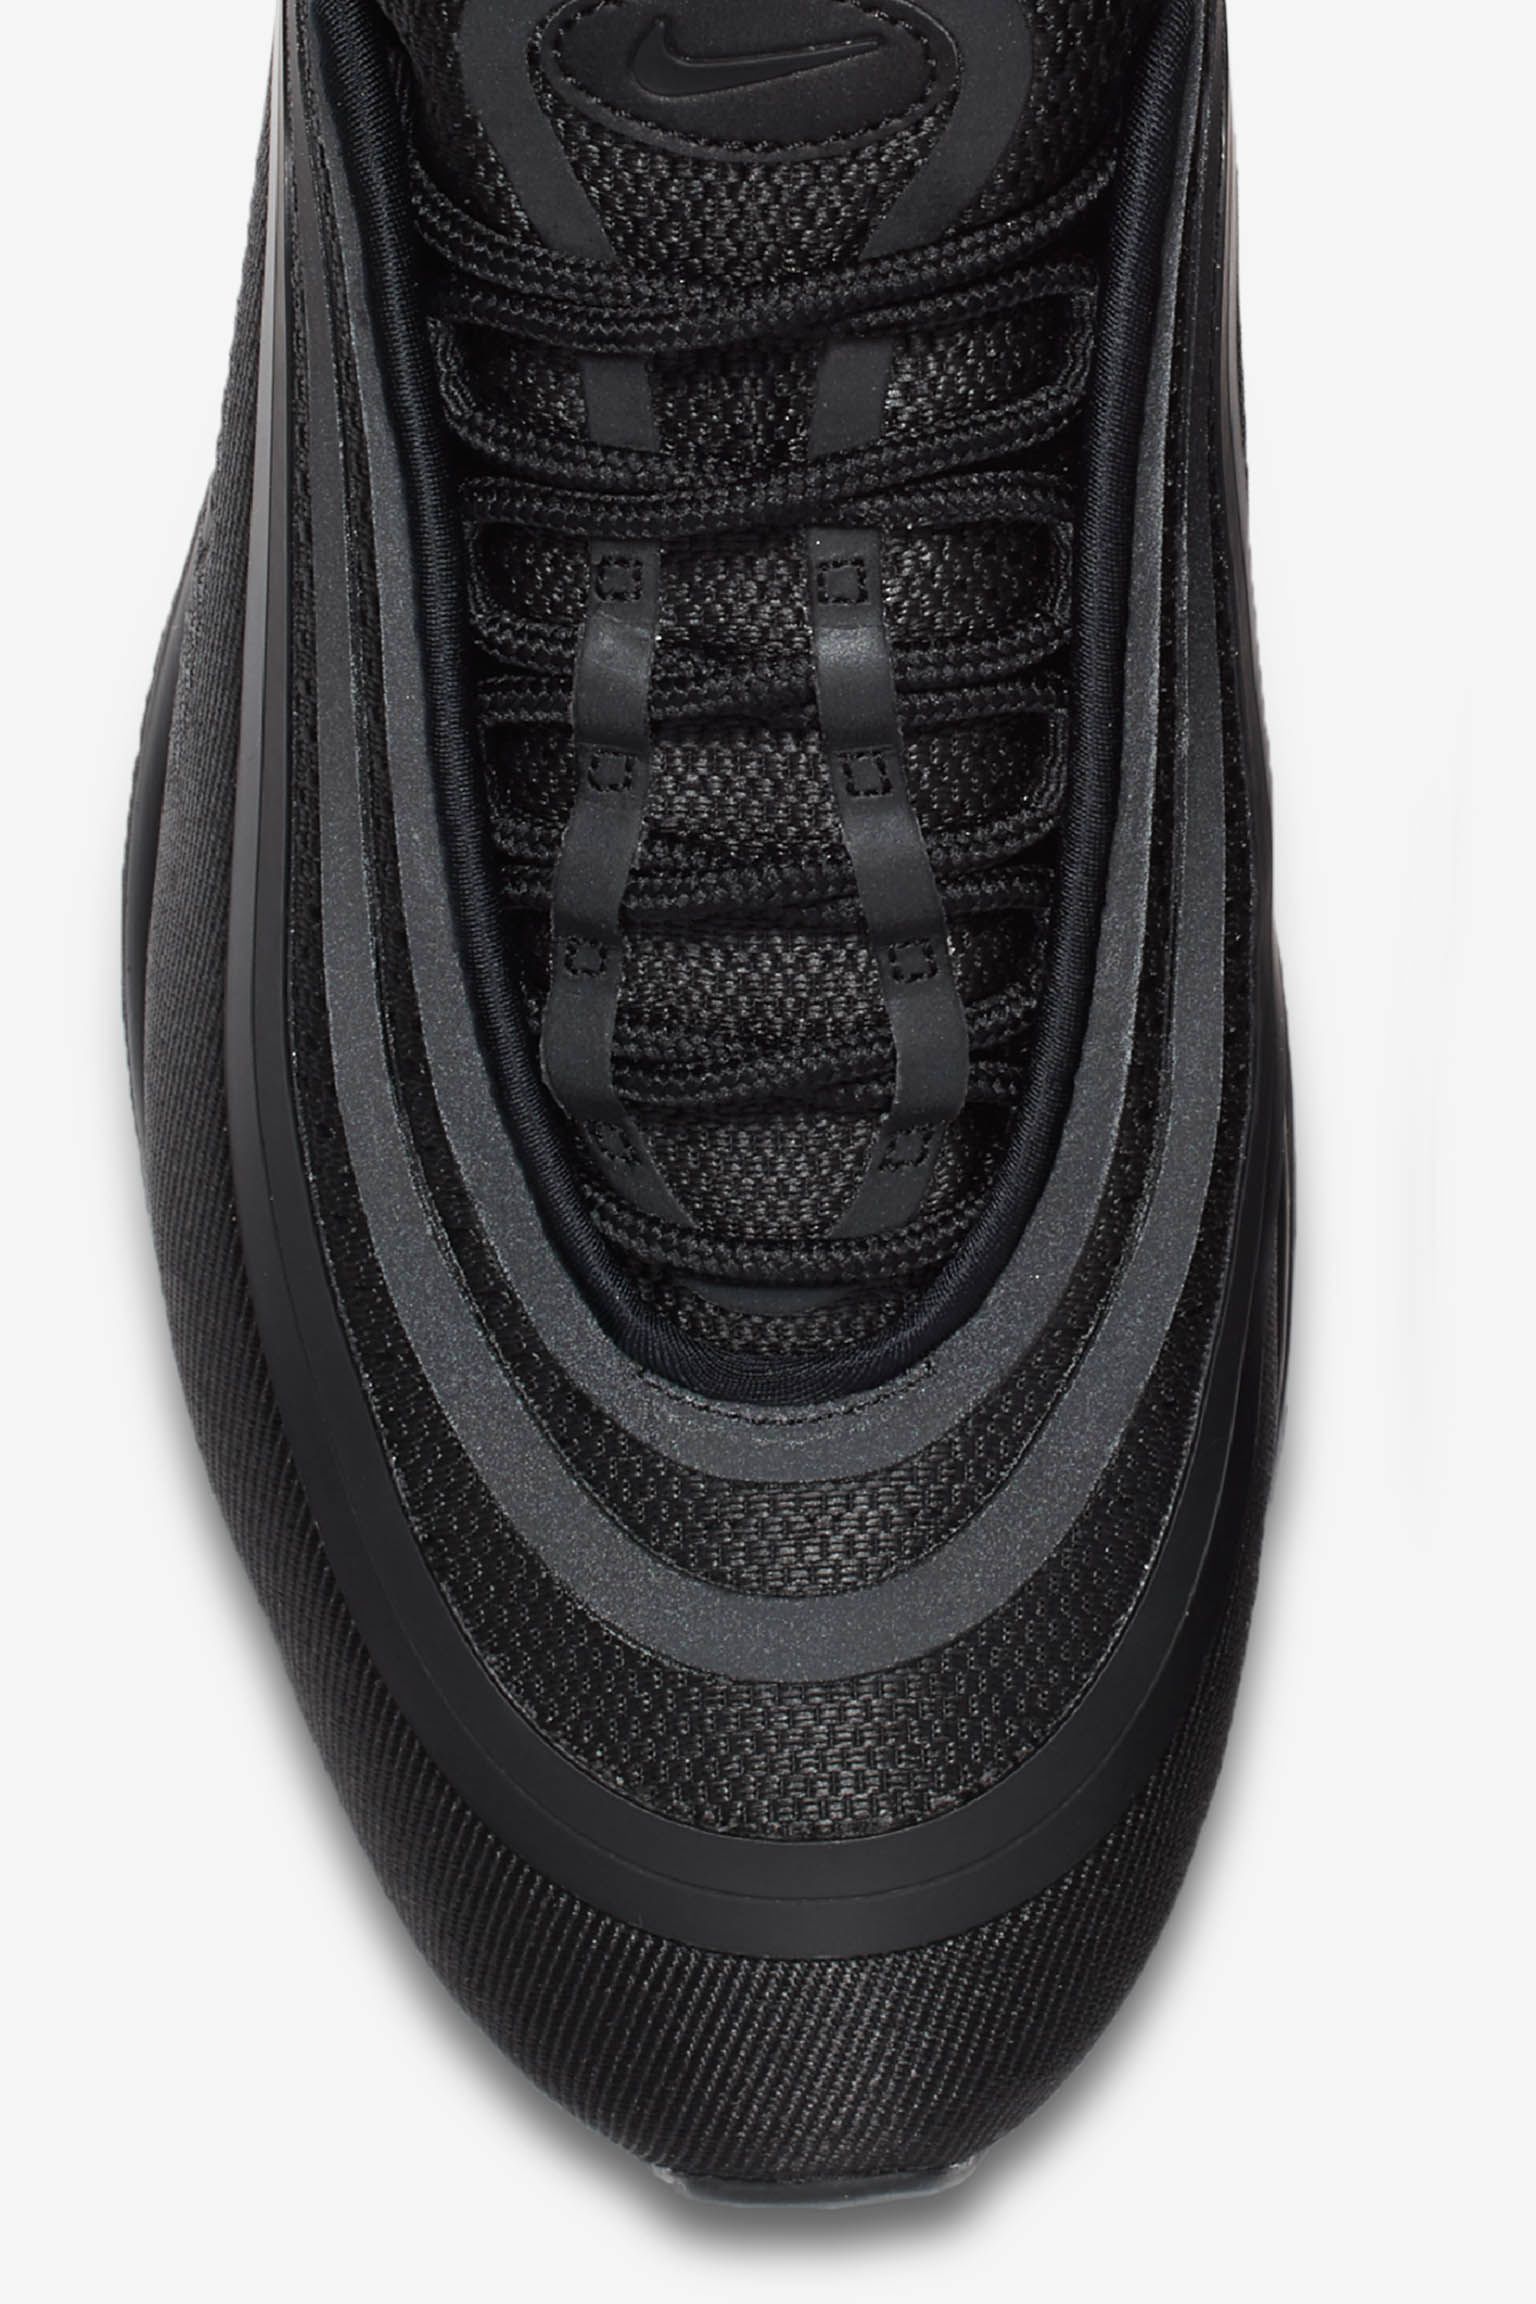 ナイキ エア マックス 97 ウルトラ '17 'Triple Black' 発売日. Nike ...